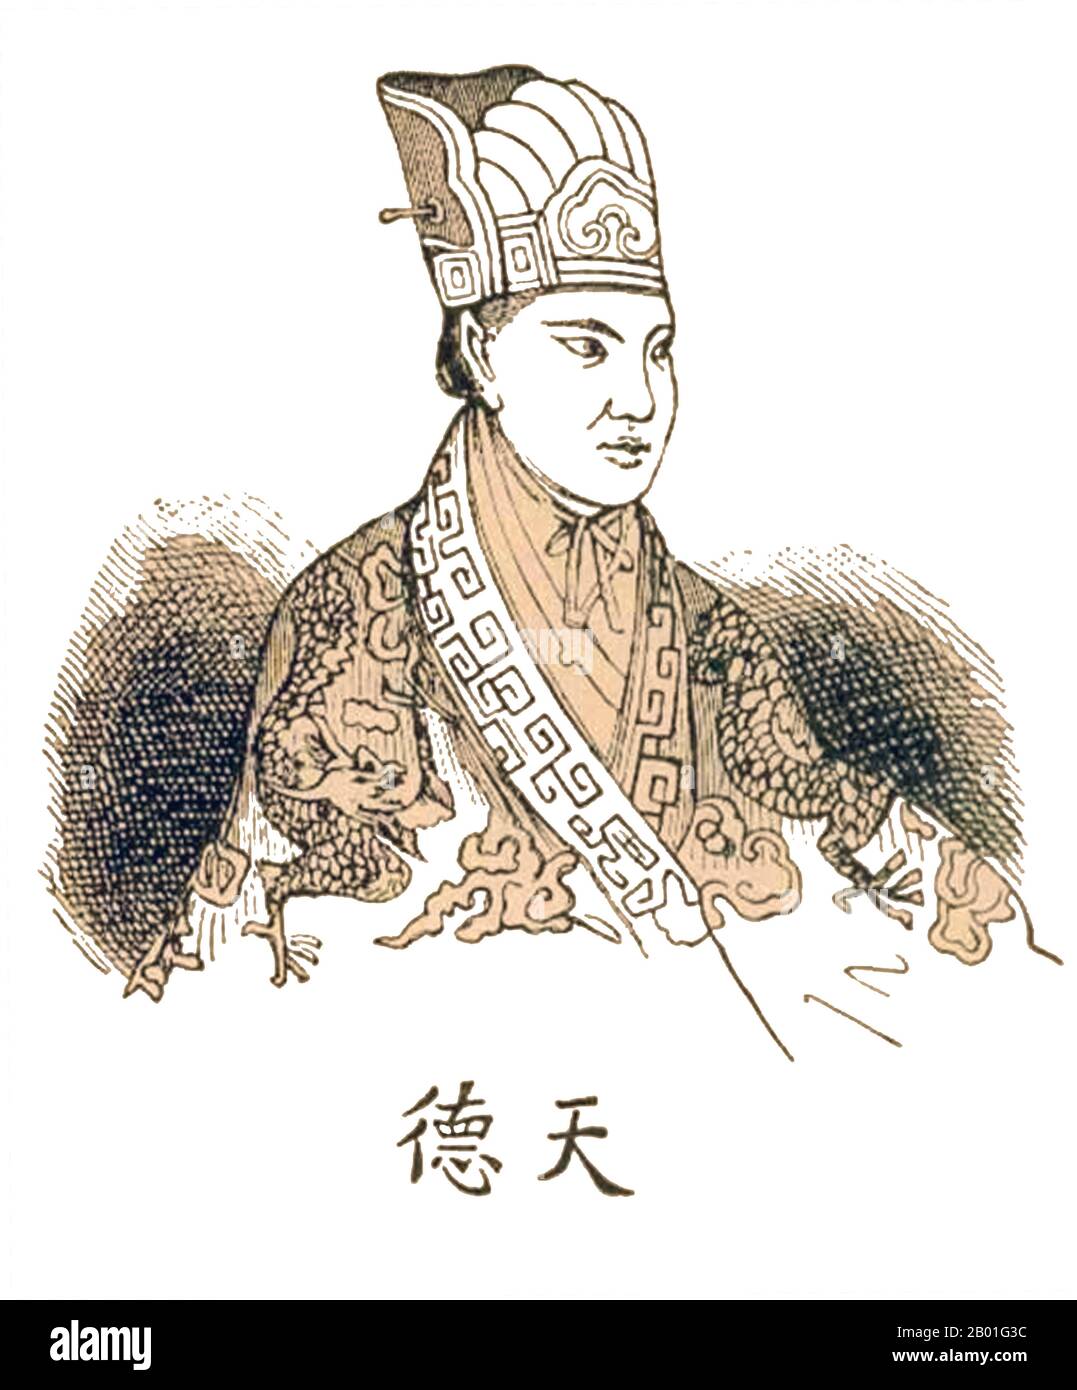 Cina: Hong Xiuquan (1 gennaio 1814 - 1 giugno 1864), leader e 're celeste' del Regno celeste di Taiping, meglio conosciuto come la ribellione di Taiping (1850-1864). Incisione, 1853. I personaggi cinesi sotto la sua immagine hanno letto 'Tian De' o Heavenly Virtue'. Hong Xiguquan, nato Hong Renkun e nome di stile Huoxiu, era un cinese Hakka che guidò la ribellione Taiping contro la dinastia Qing, stabilendo il regno celeste Taiping su varie parti della Cina meridionale, con se stesso come il 're celeste' e autoproclamato fratello di Gesù Cristo. Foto Stock